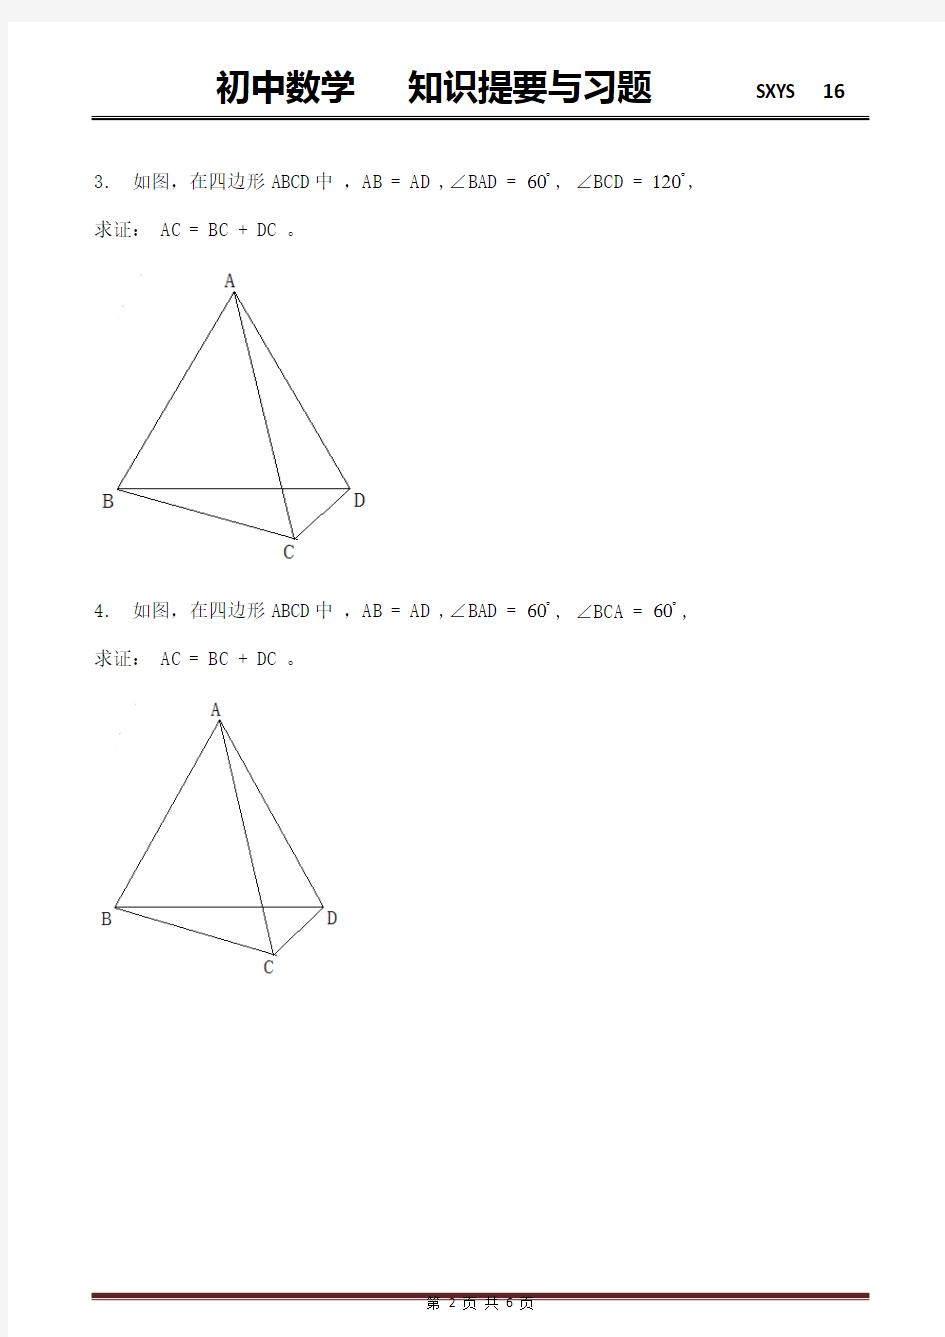 作辅助图形等边三角形解题